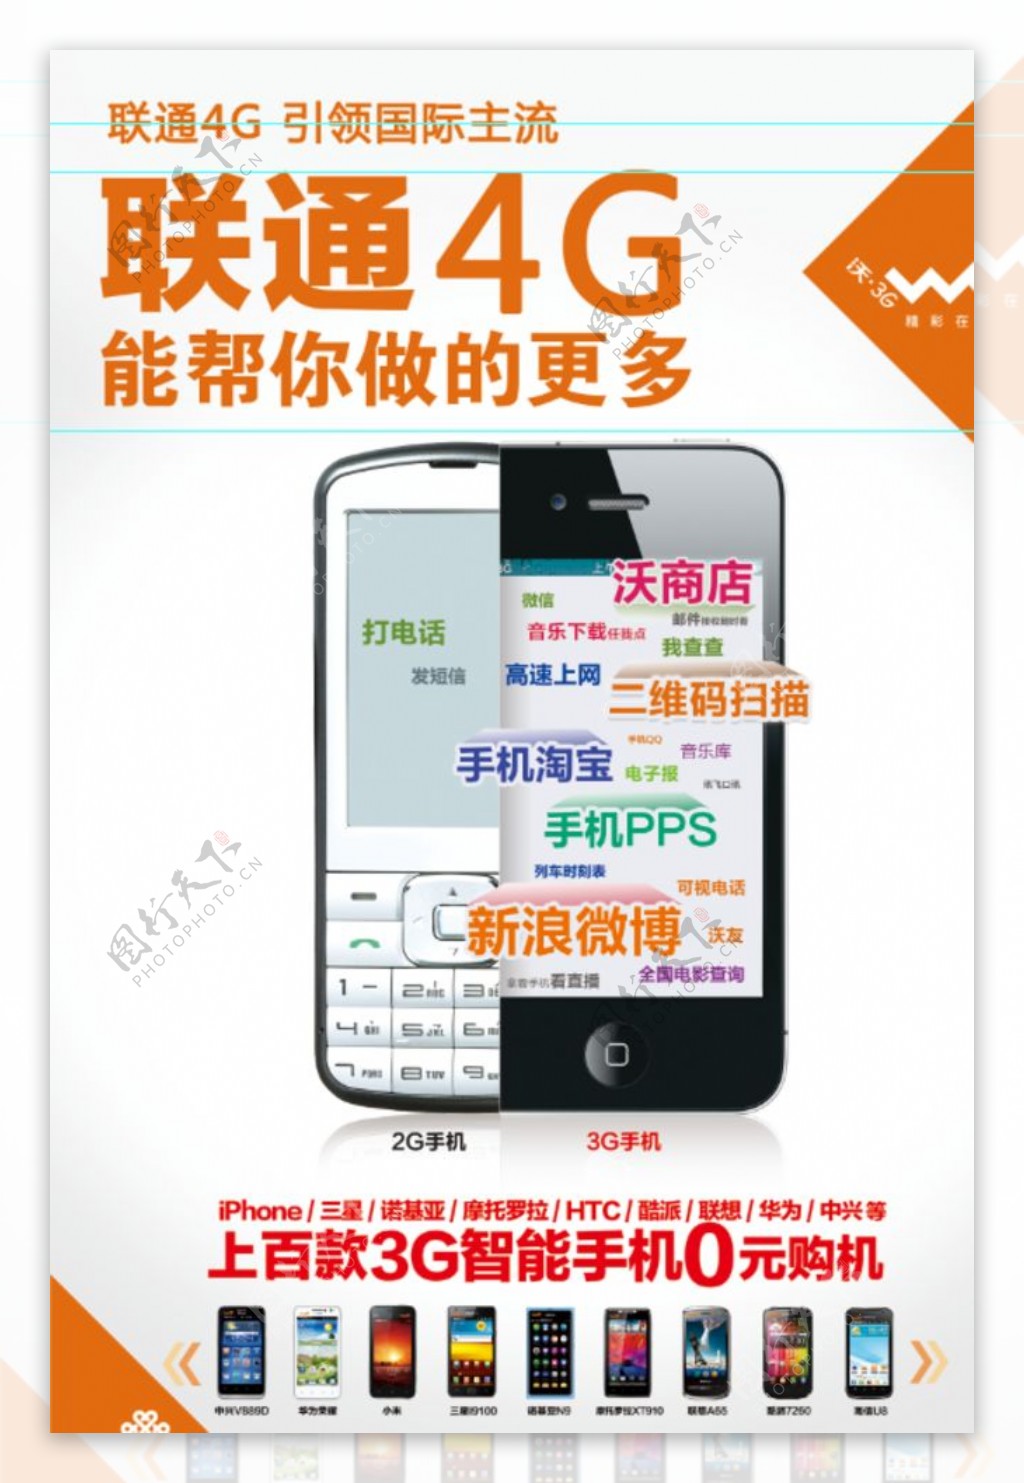 联通3G与4G图片